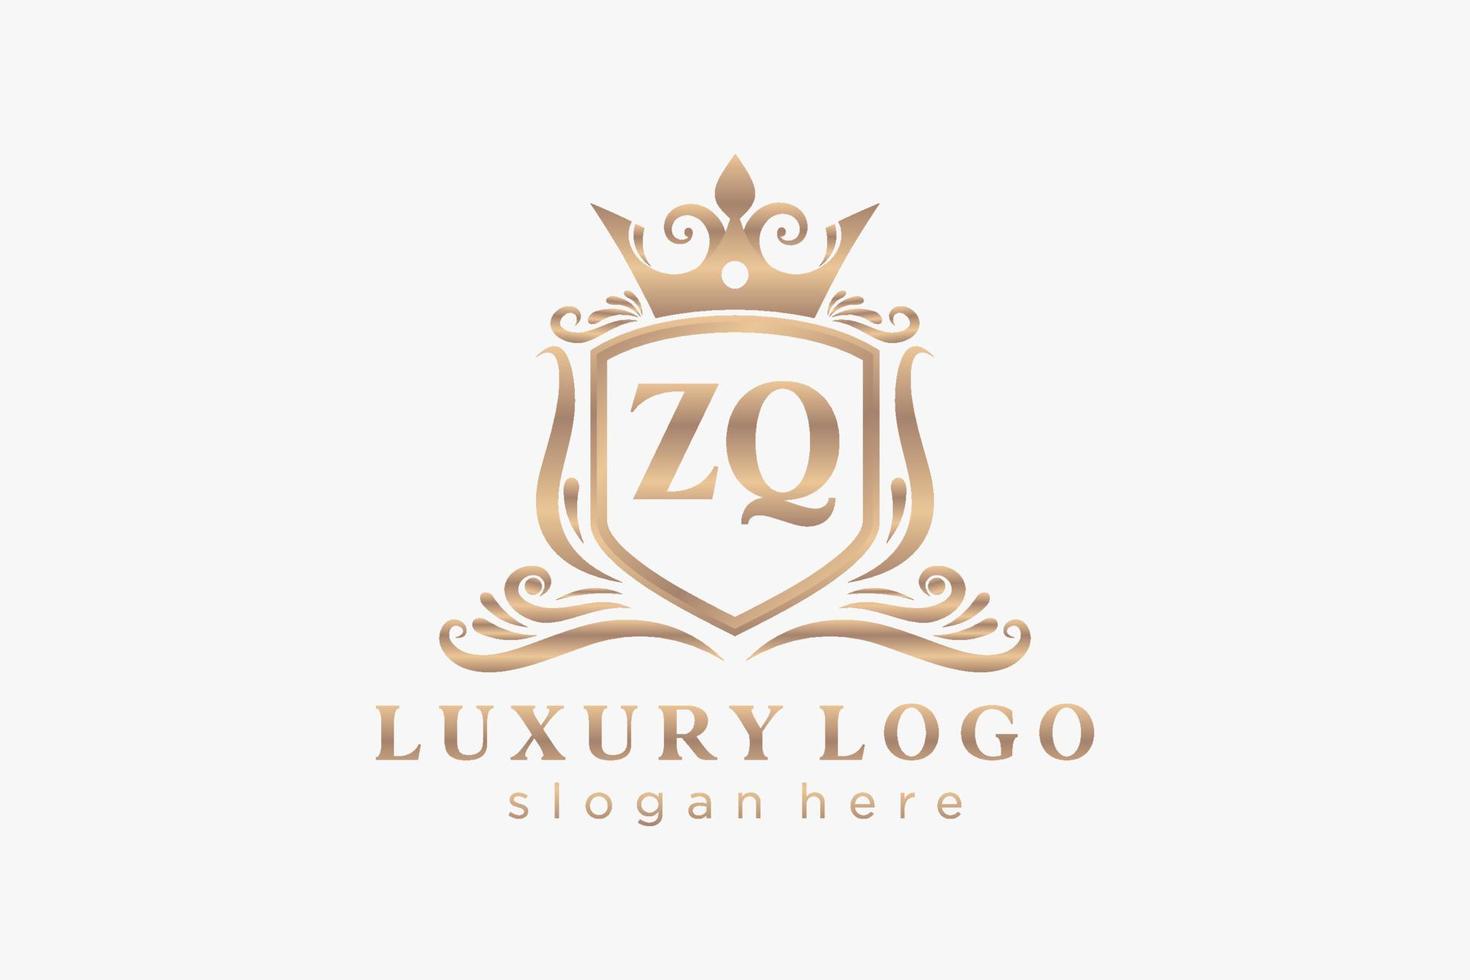 Royal Luxury Logo-Vorlage mit anfänglichem zq-Buchstaben in Vektorgrafiken für Restaurant, Lizenzgebühren, Boutique, Café, Hotel, Heraldik, Schmuck, Mode und andere Vektorillustrationen. vektor